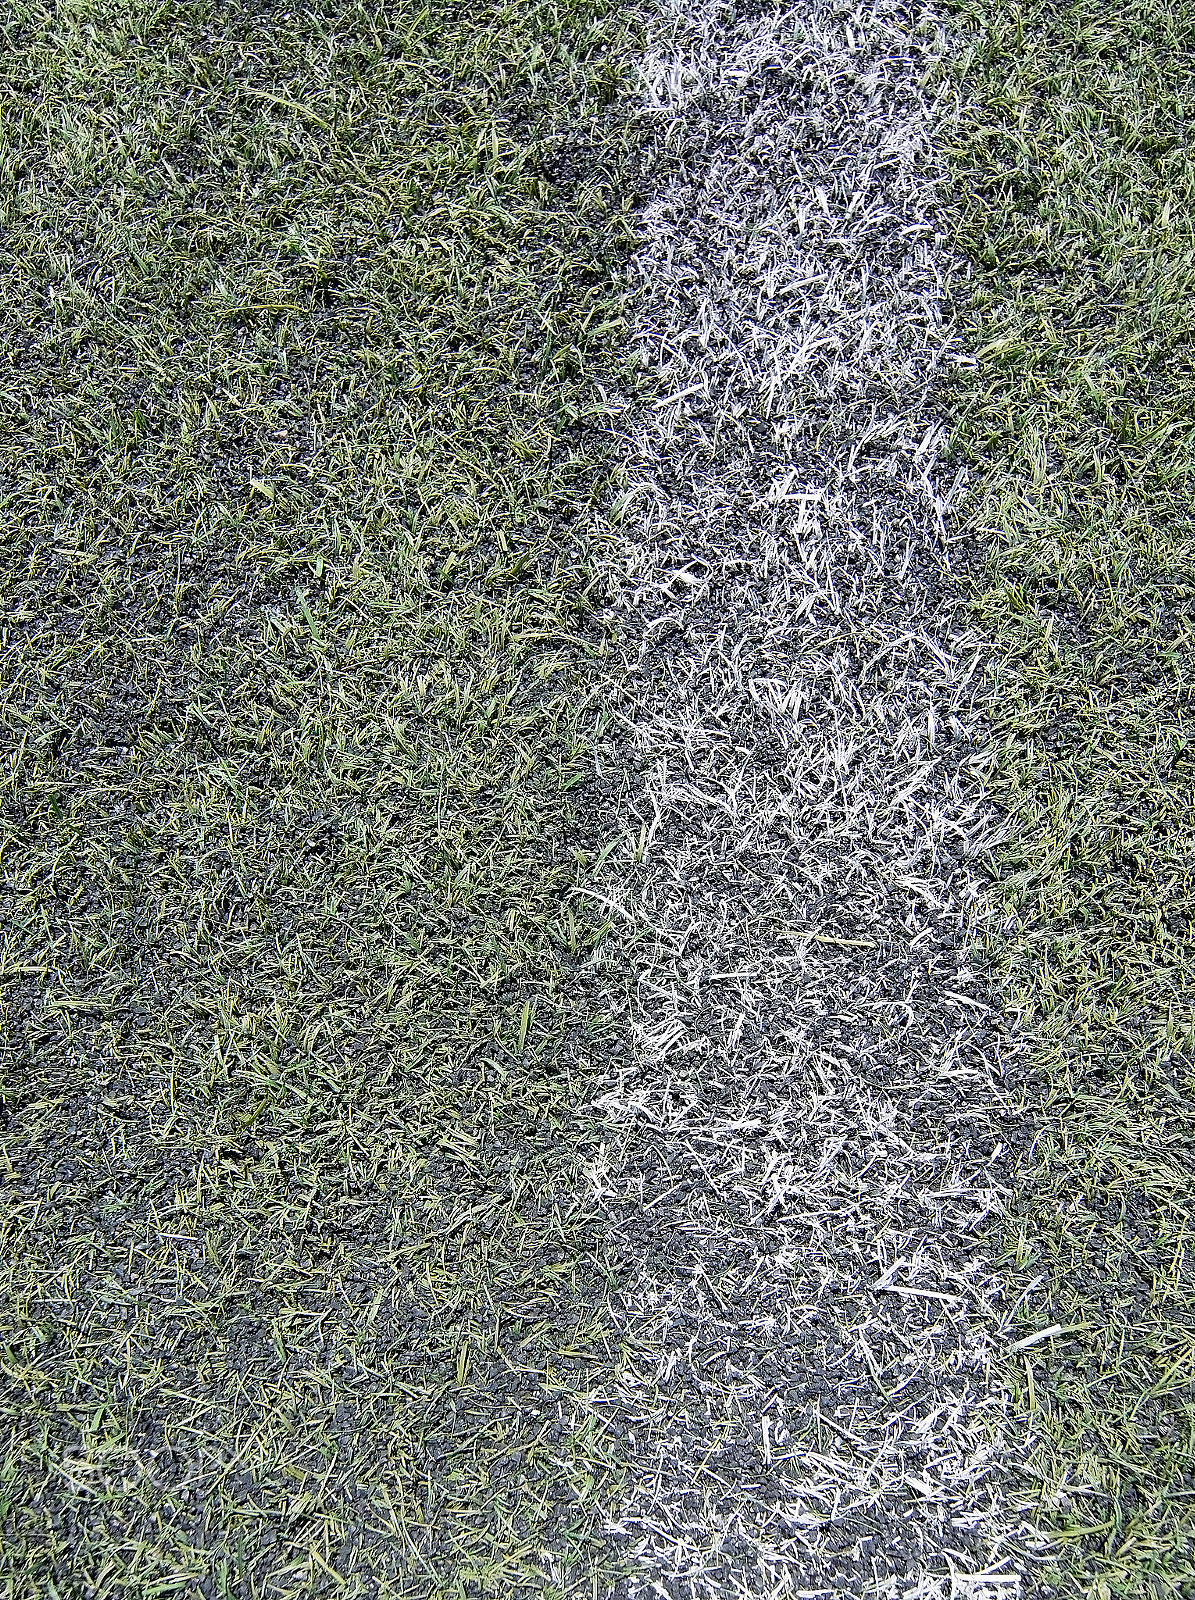 AF Zoom-Nikkor 35-70mm f/2.8D N sample photo. Soccer football field photography